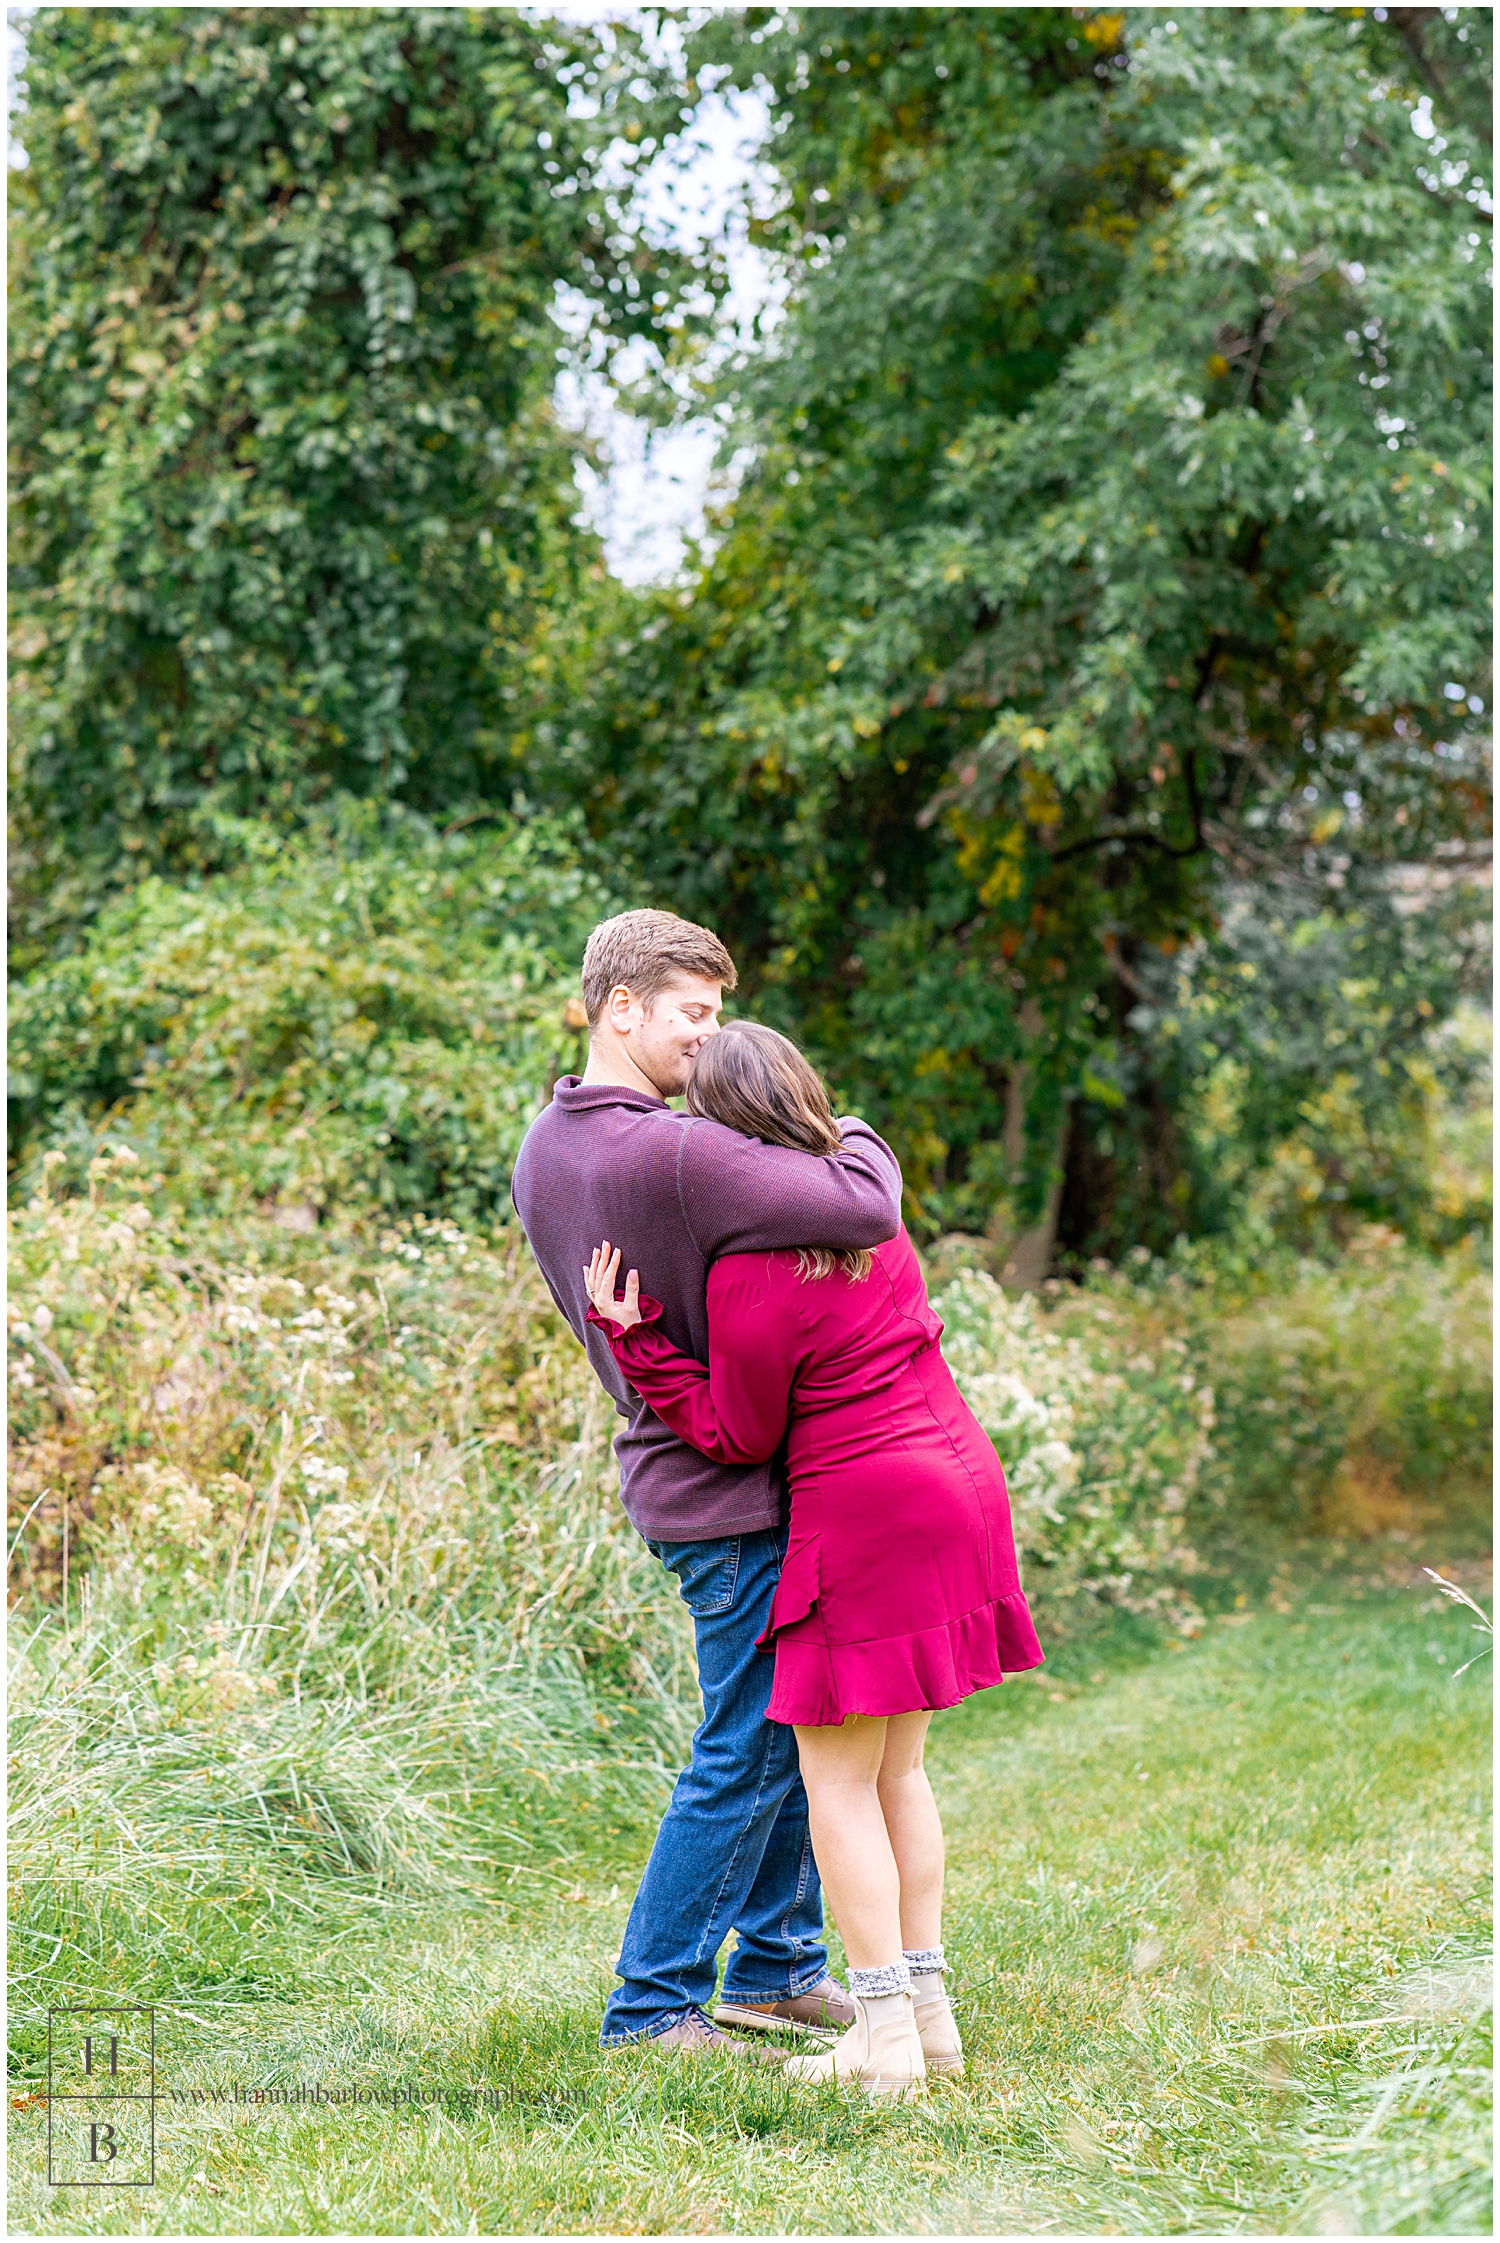 Groom hugging future bride wearing red dress